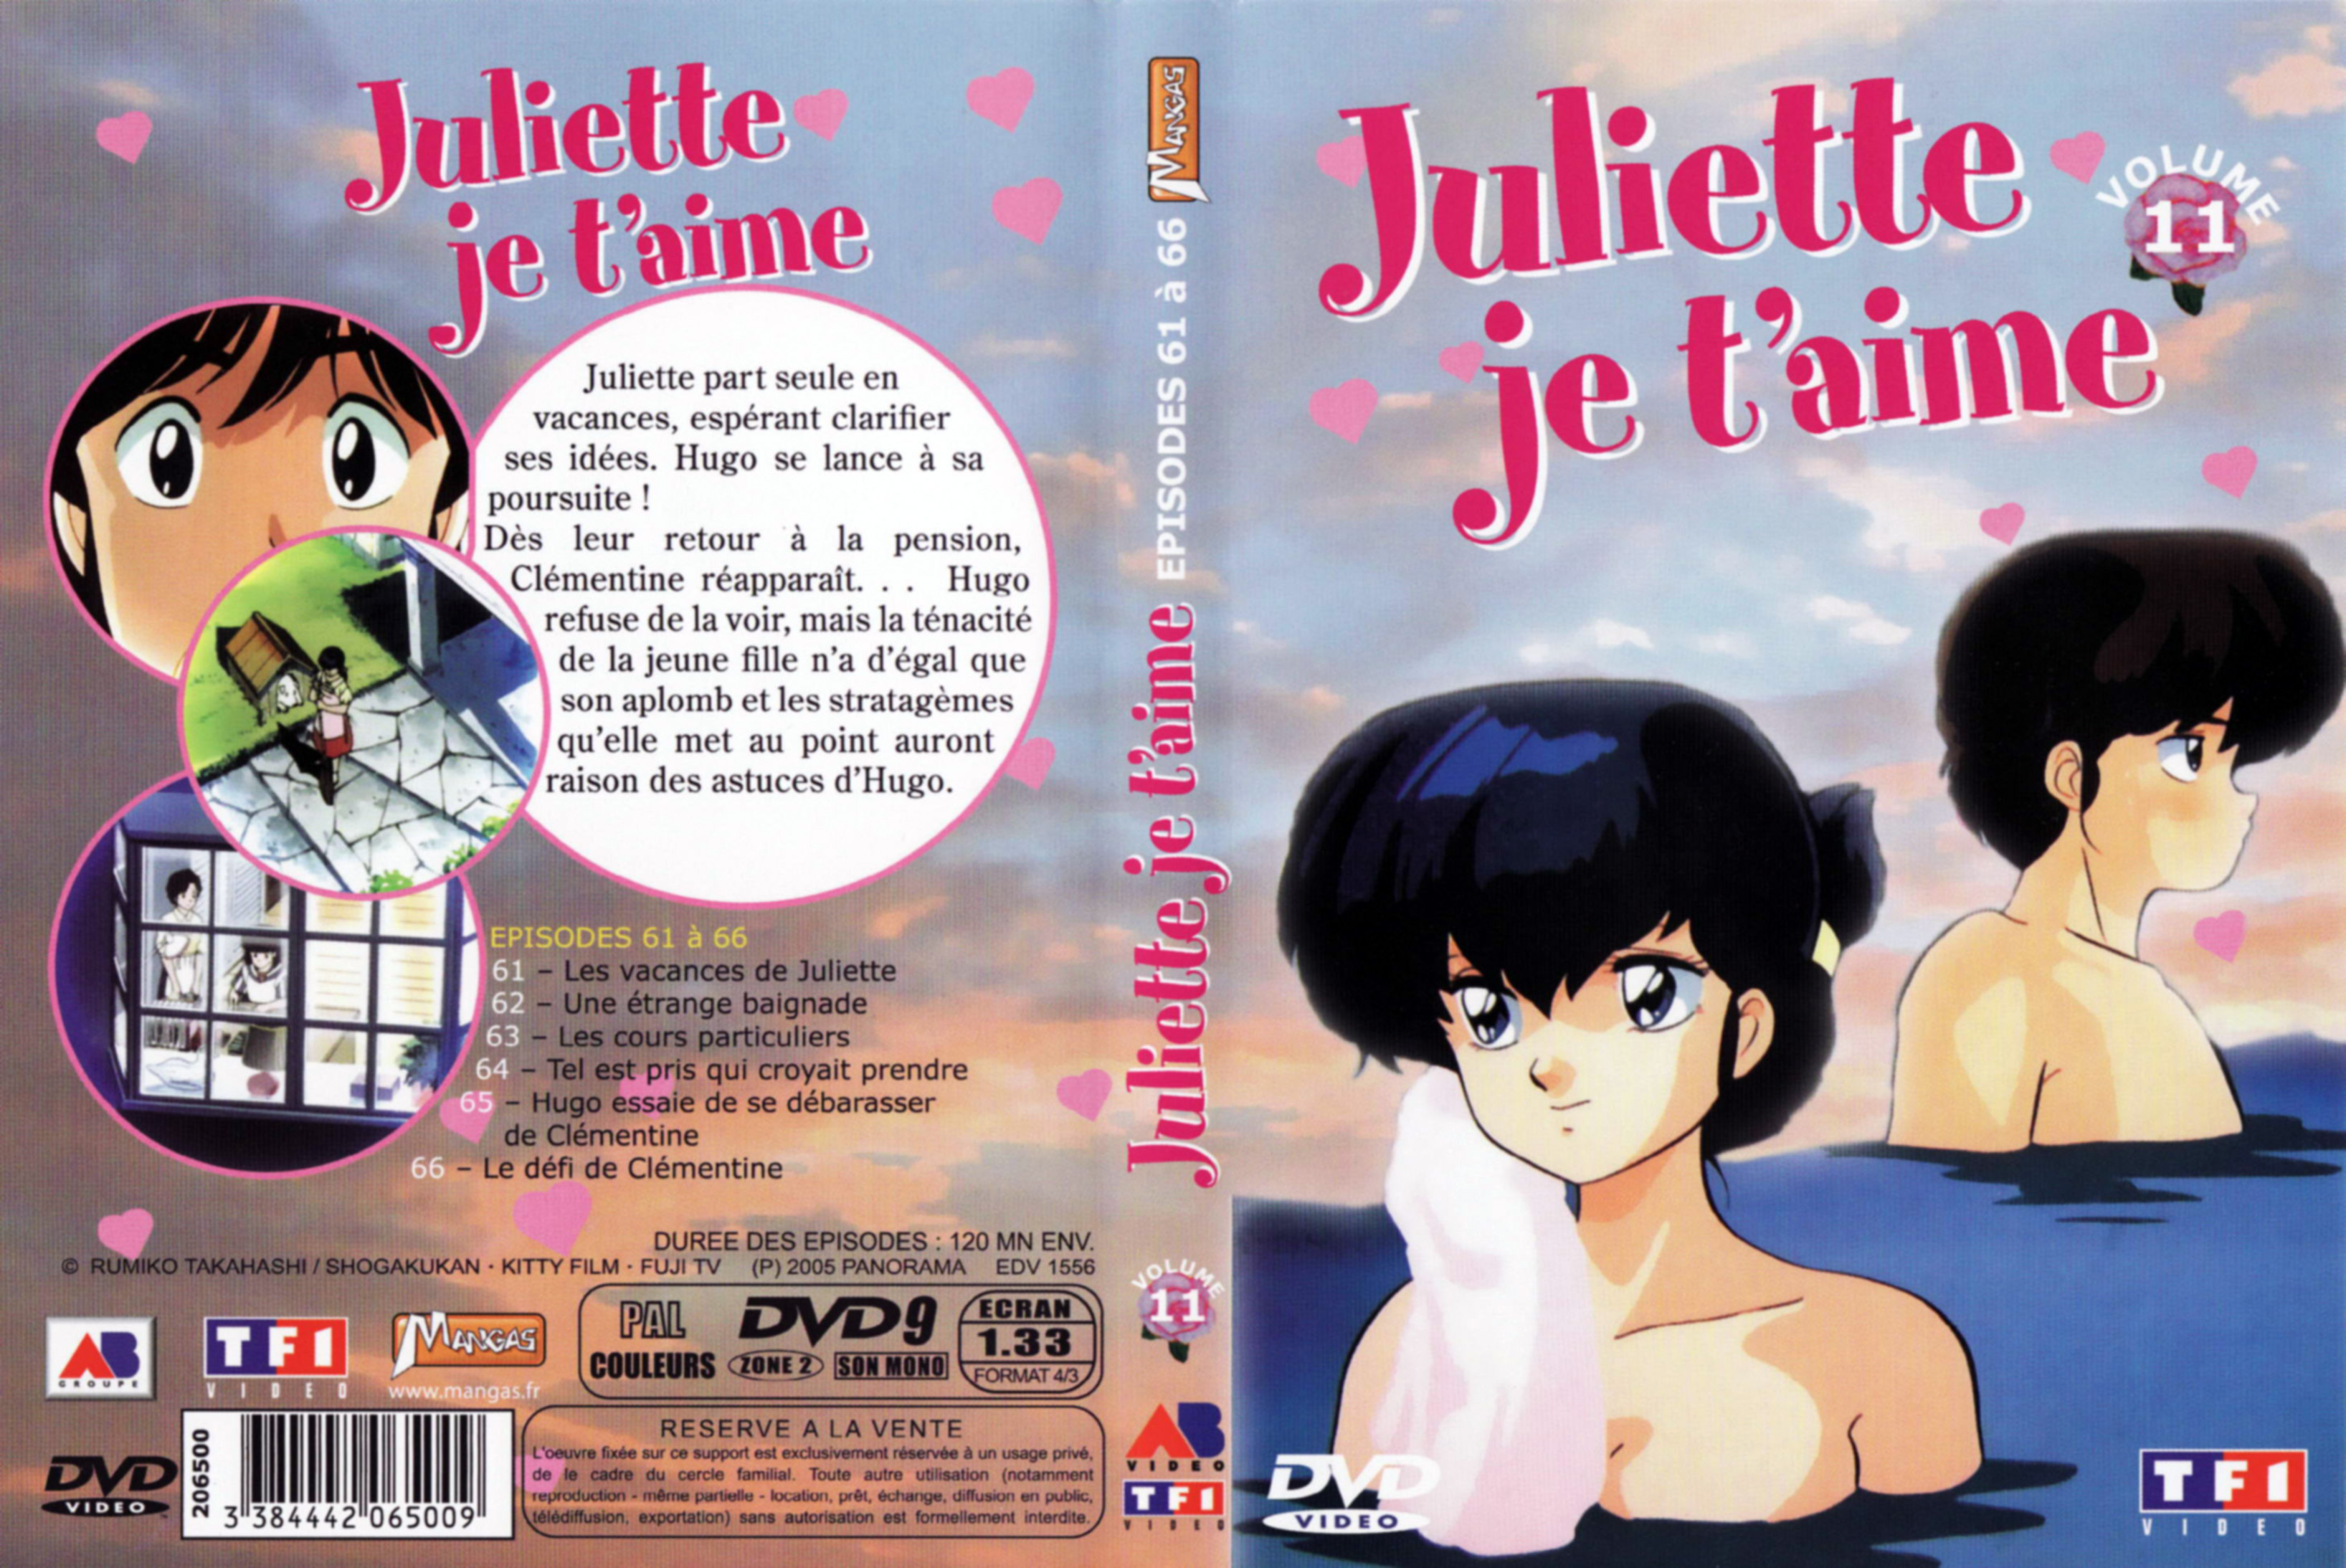 Jaquette DVD Juliette je t aime vol 11